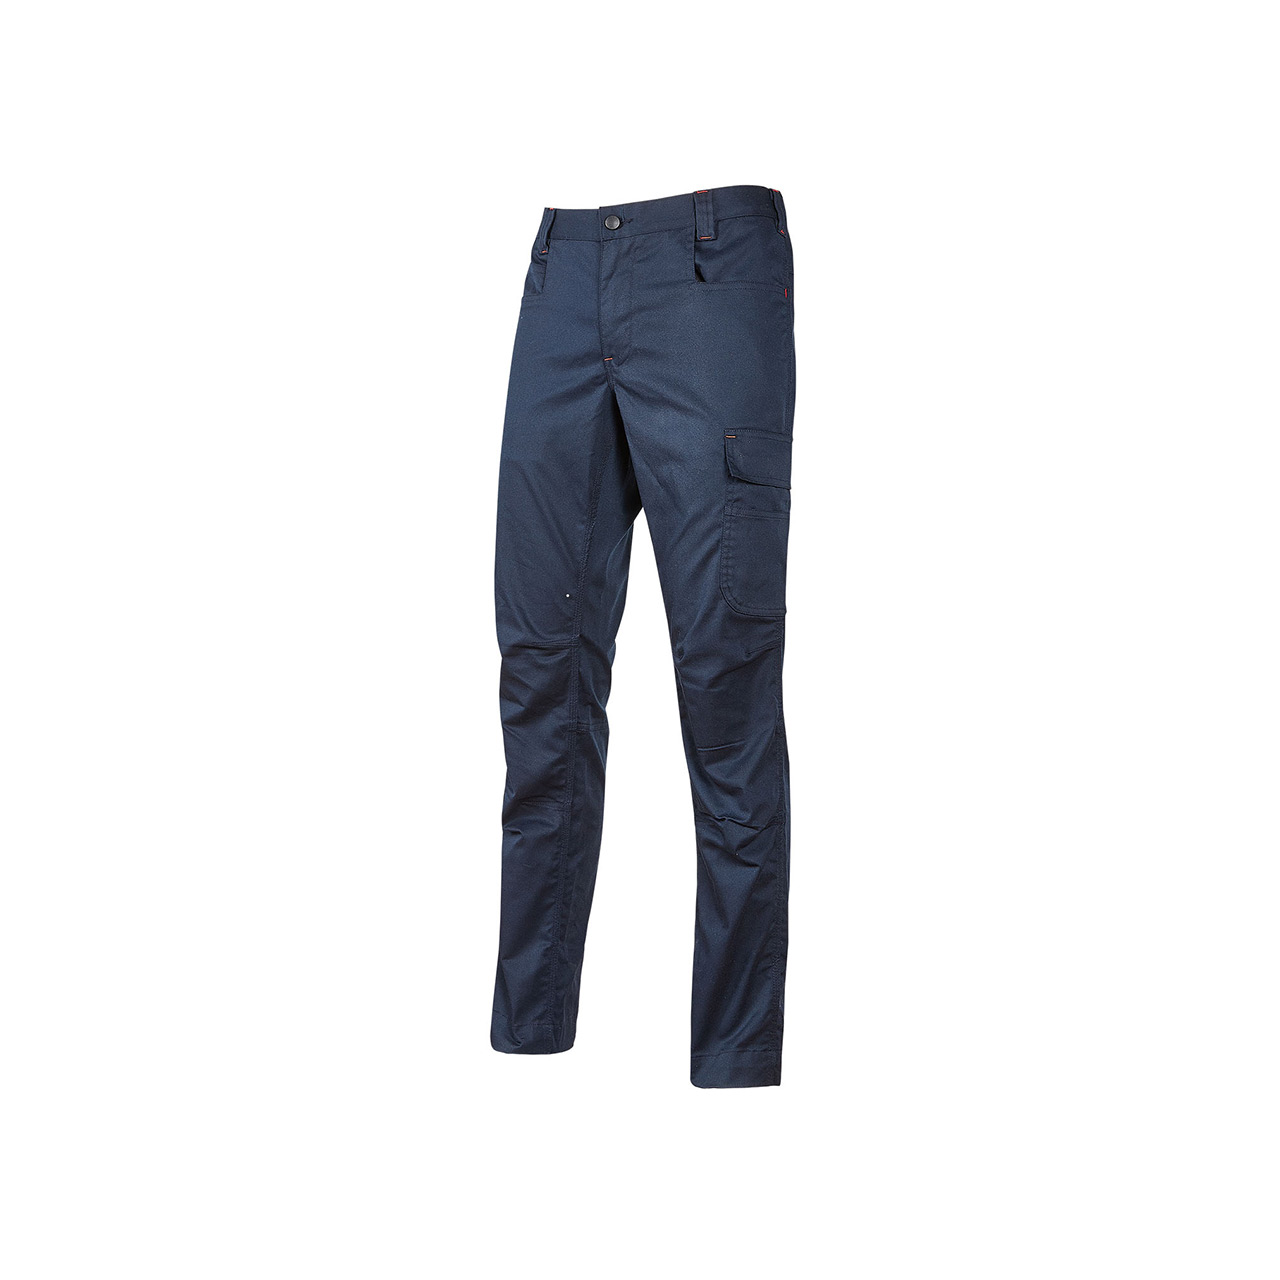 pantalone da lavoro upower modello bravo top winter colore westlake blue